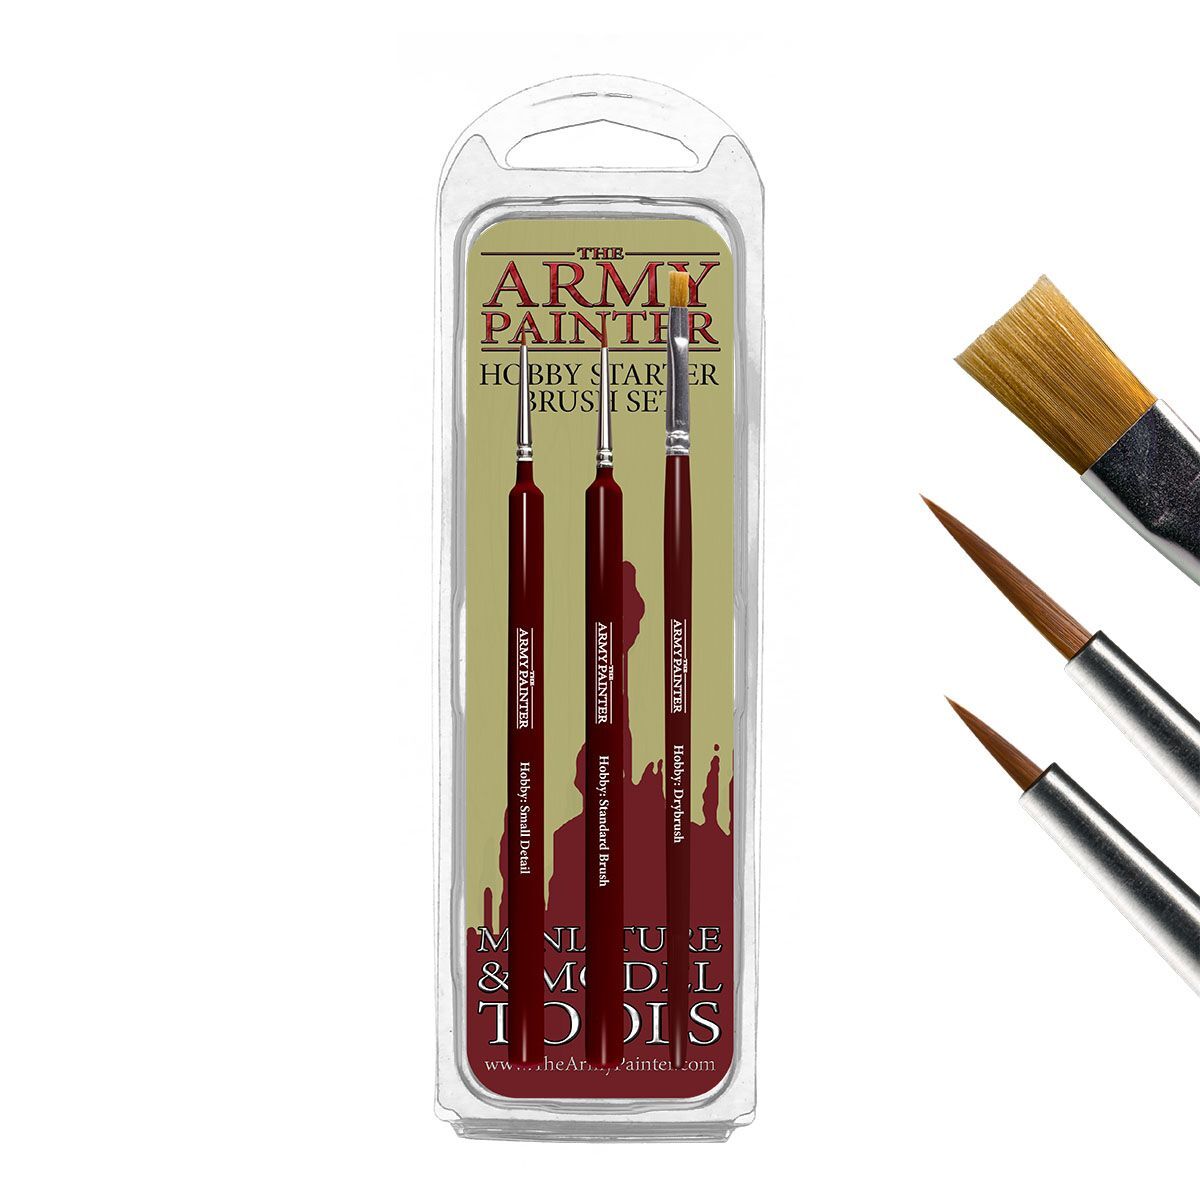 The Army Painter Miniature & Model Hobby Starter Brush Set